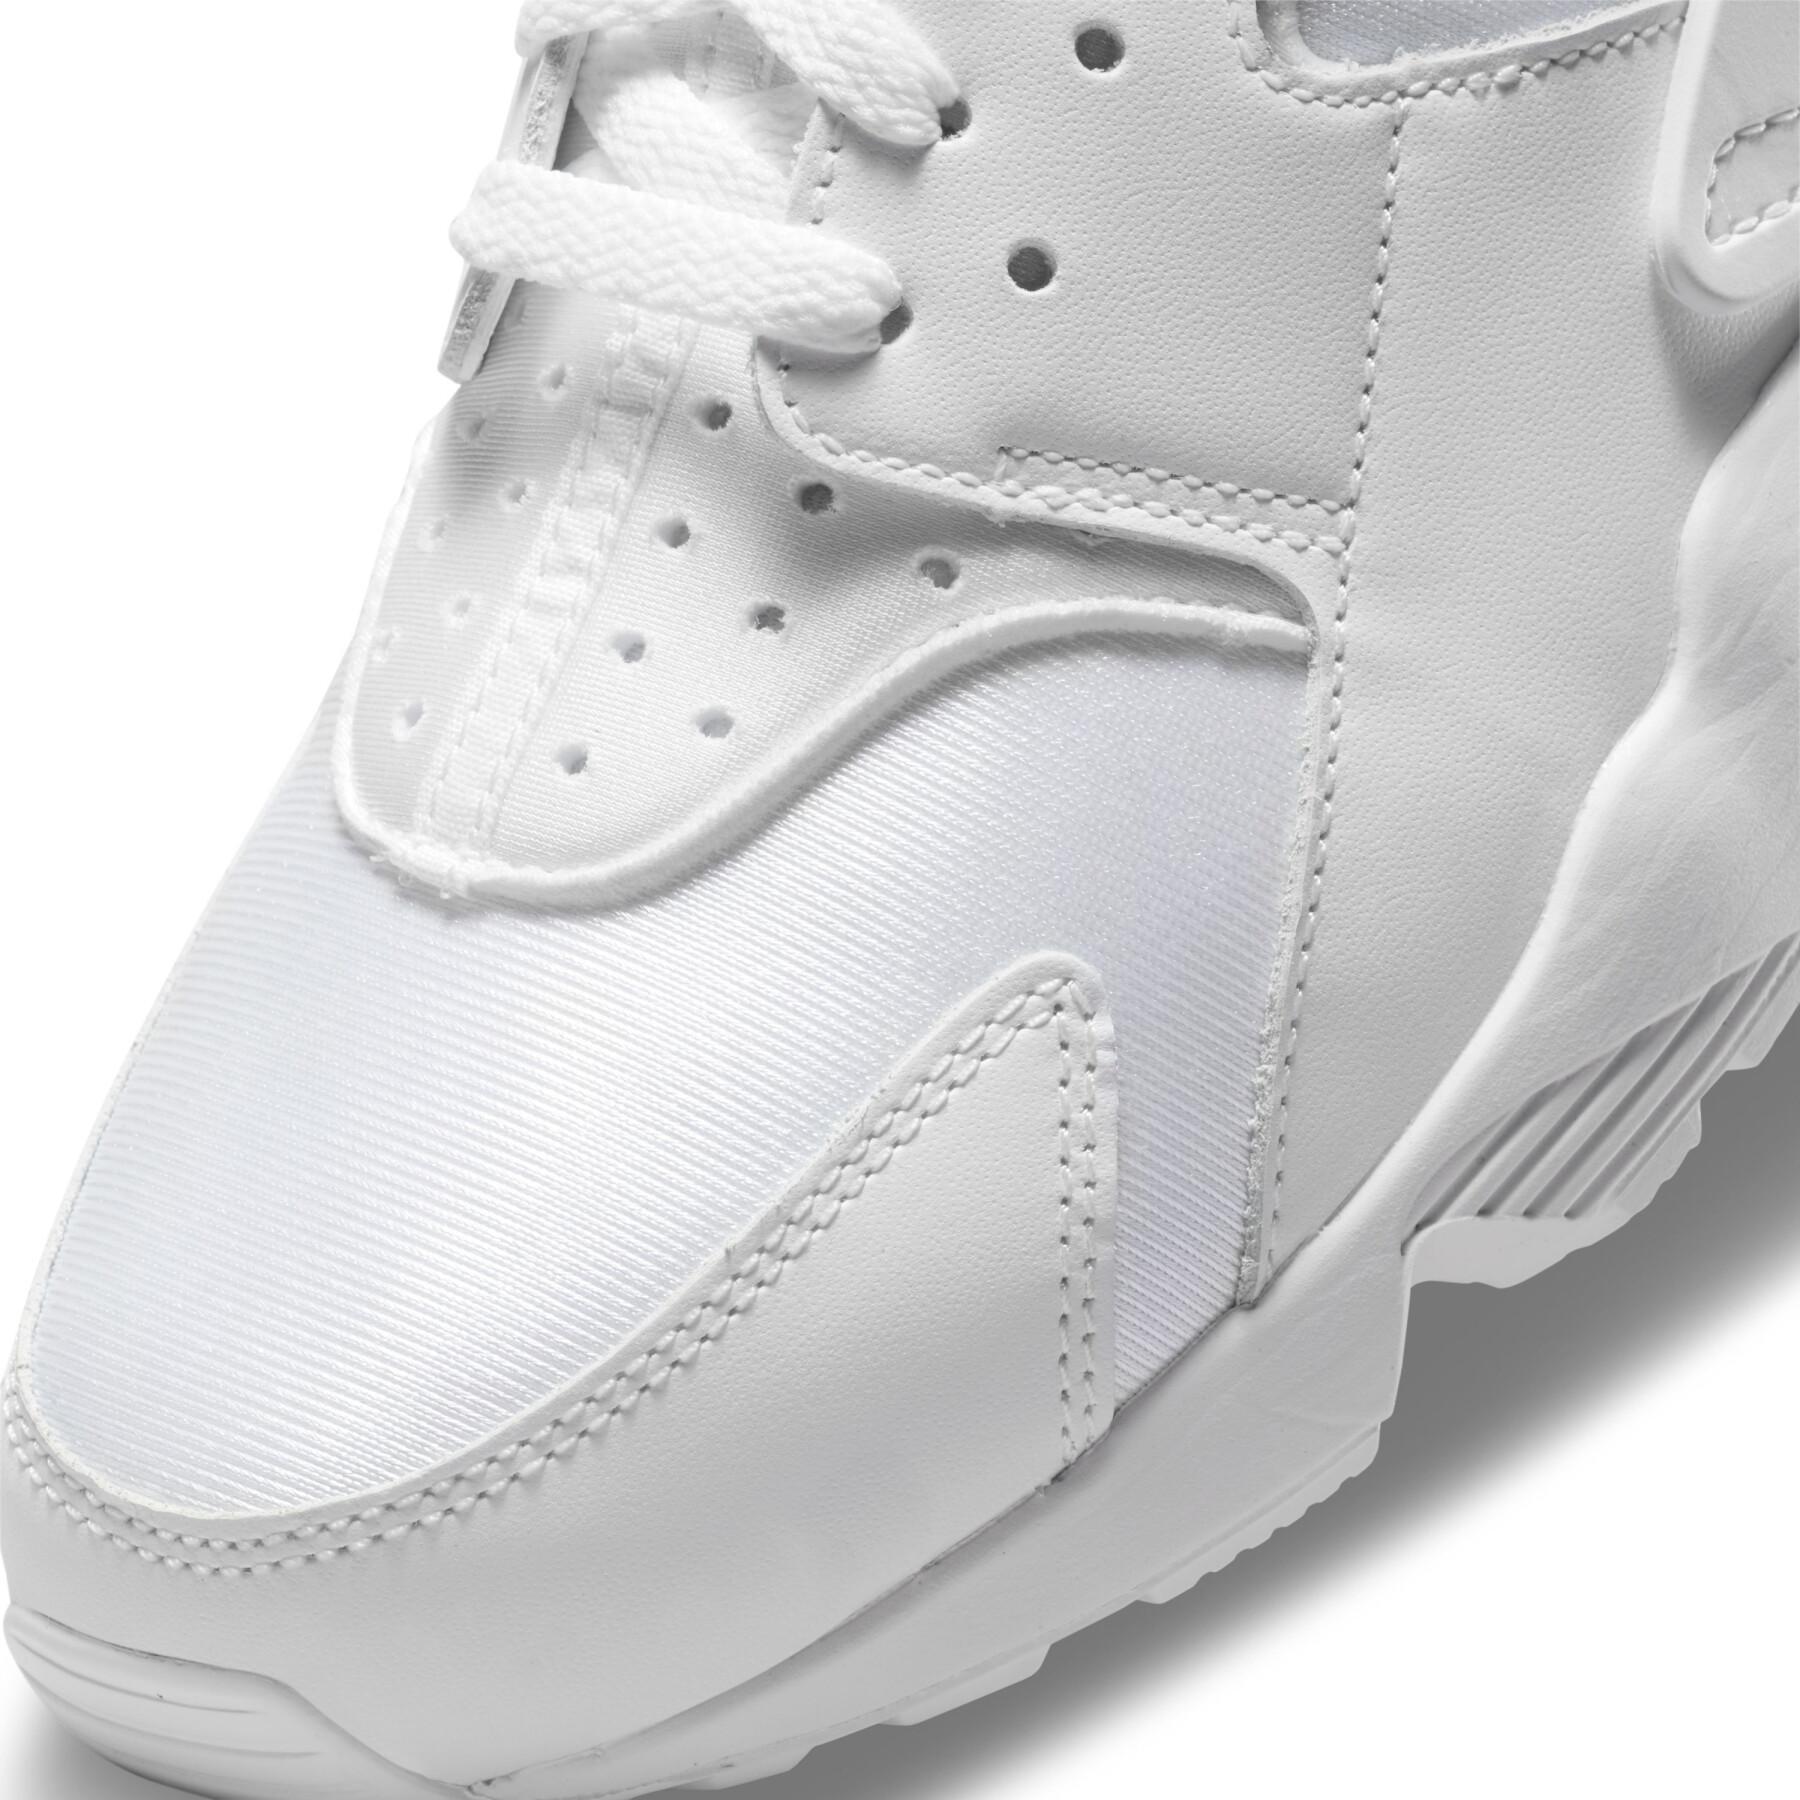 Sneakers Nike Air Huarache